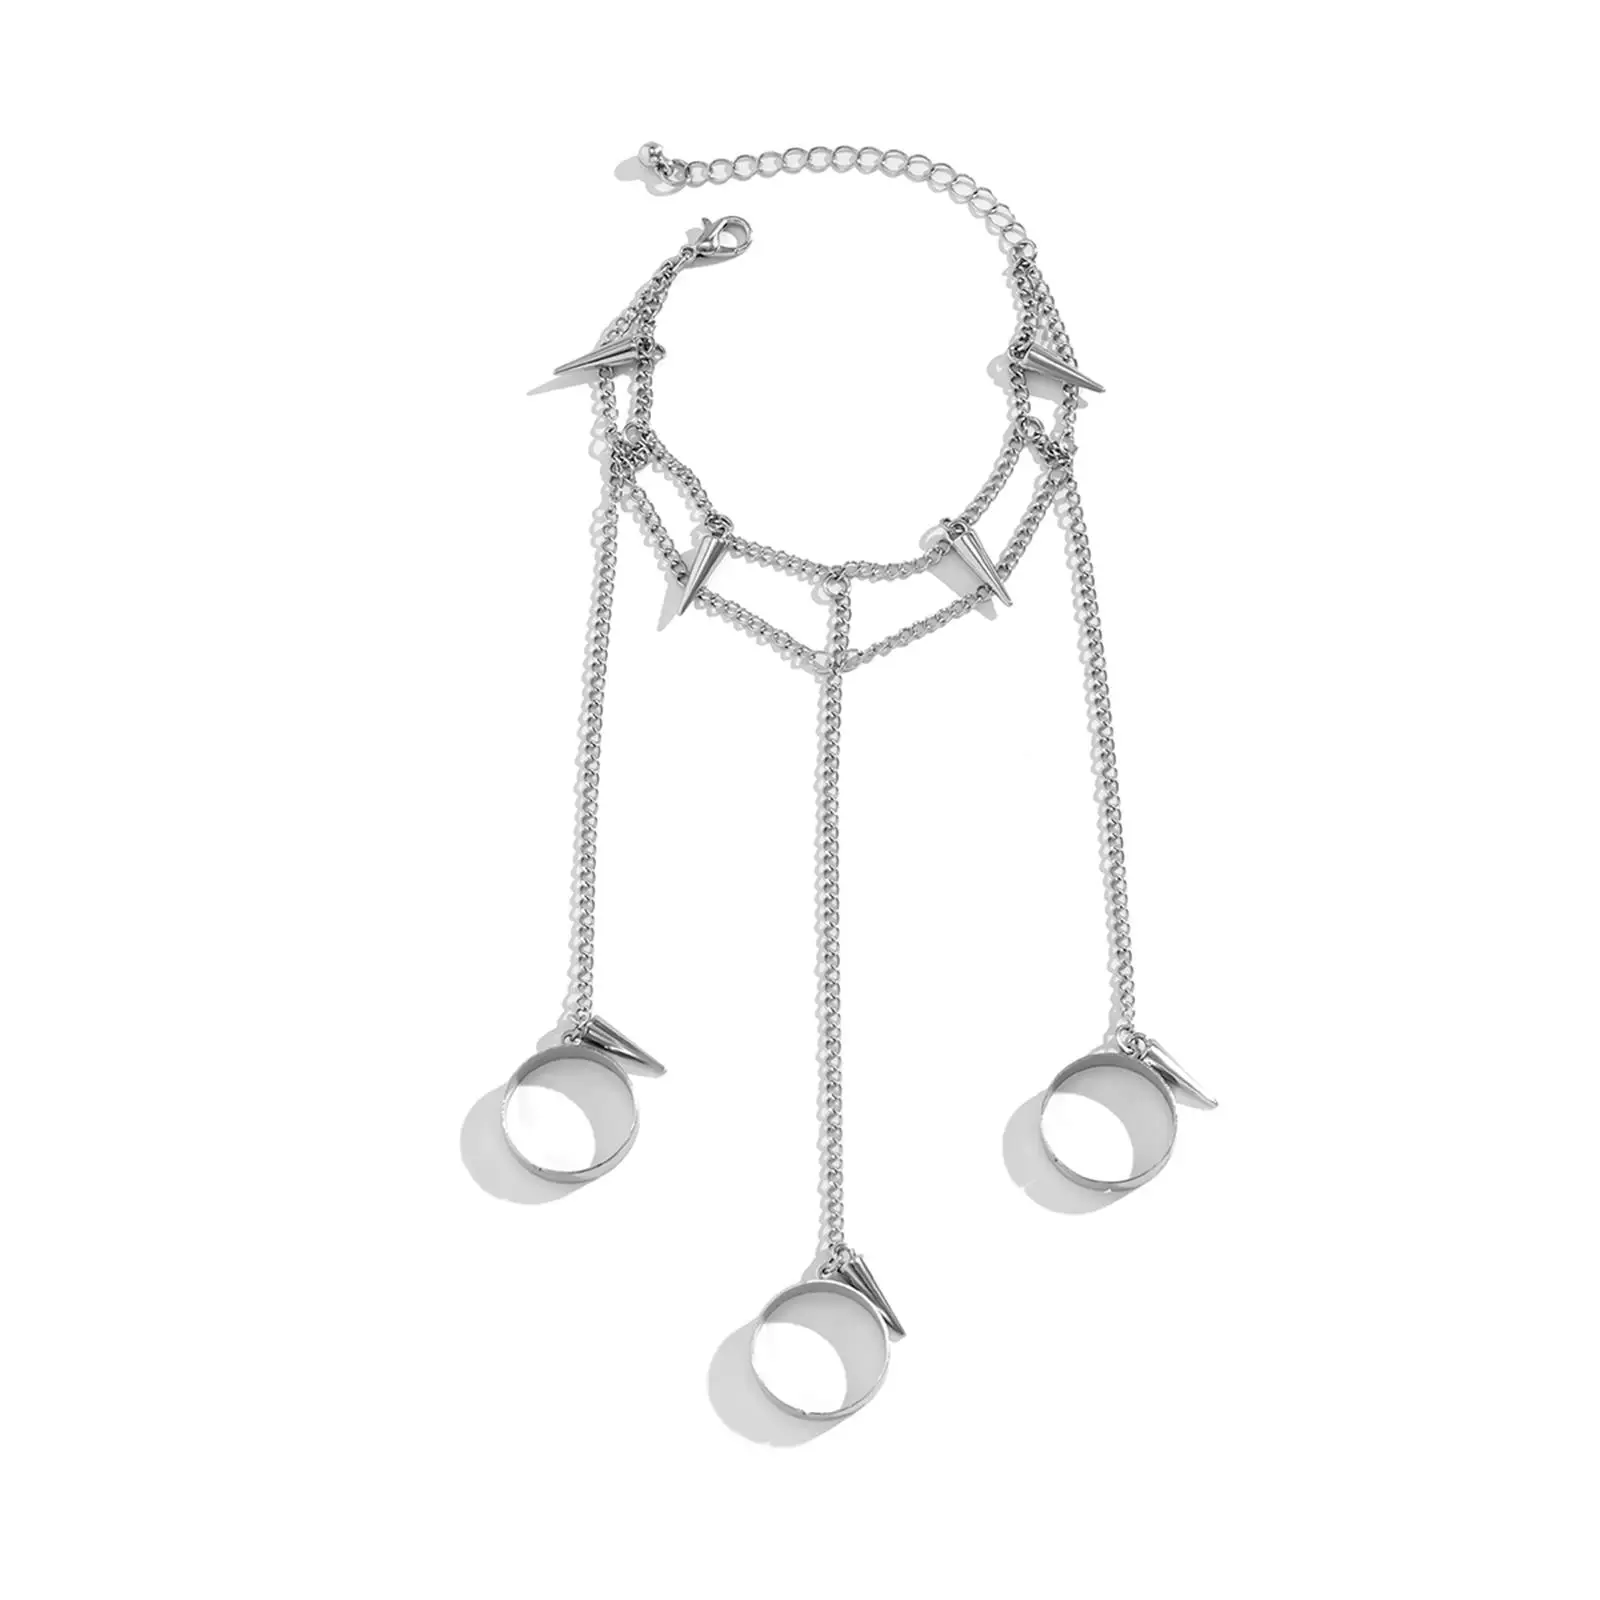 Ring Bracelet Chain Tassel Bracelet with Rings Wrist Chain for Girls